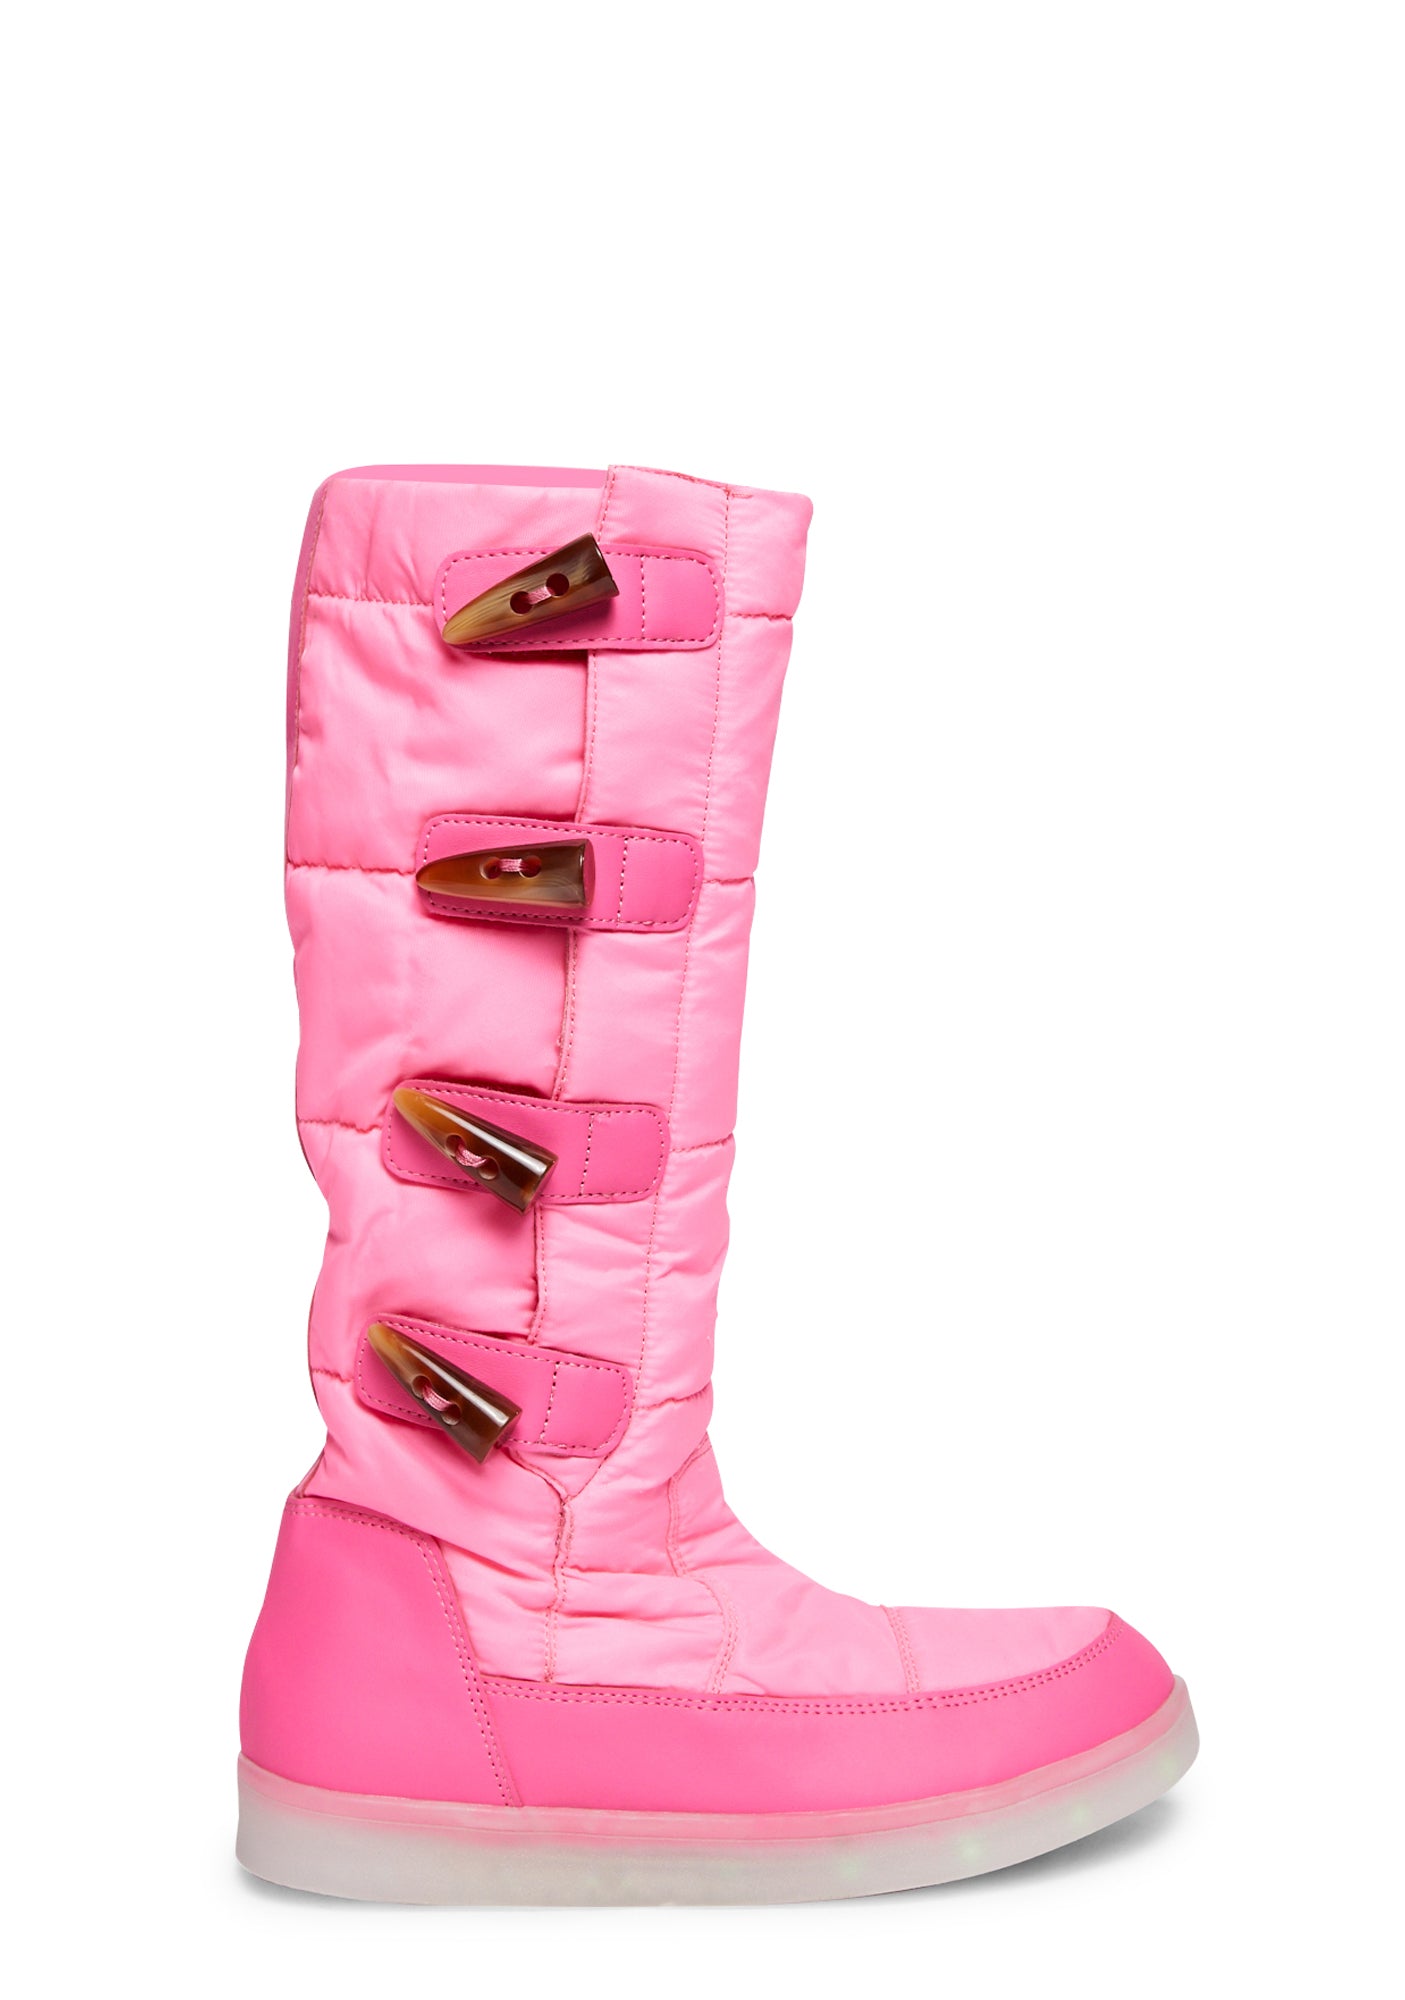 Yeti LED Boots - Pink | US 6